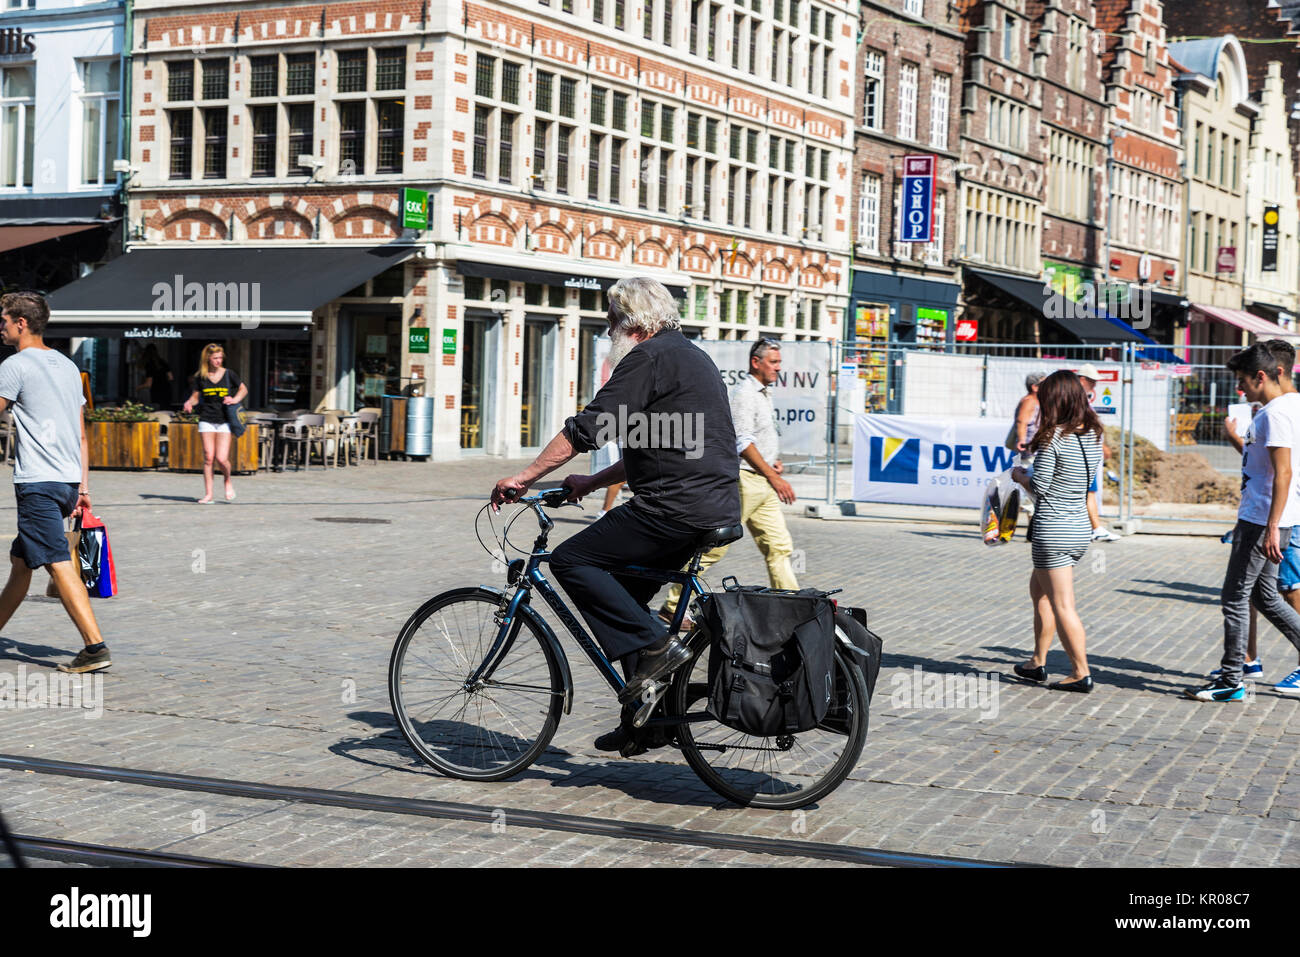 Ghent, Belgio - 29 agosto 2017: Senior uomo vestito di nero sulla circolazione in bicicletta e gente che passeggia in un antico centro storico della città medievale Foto Stock